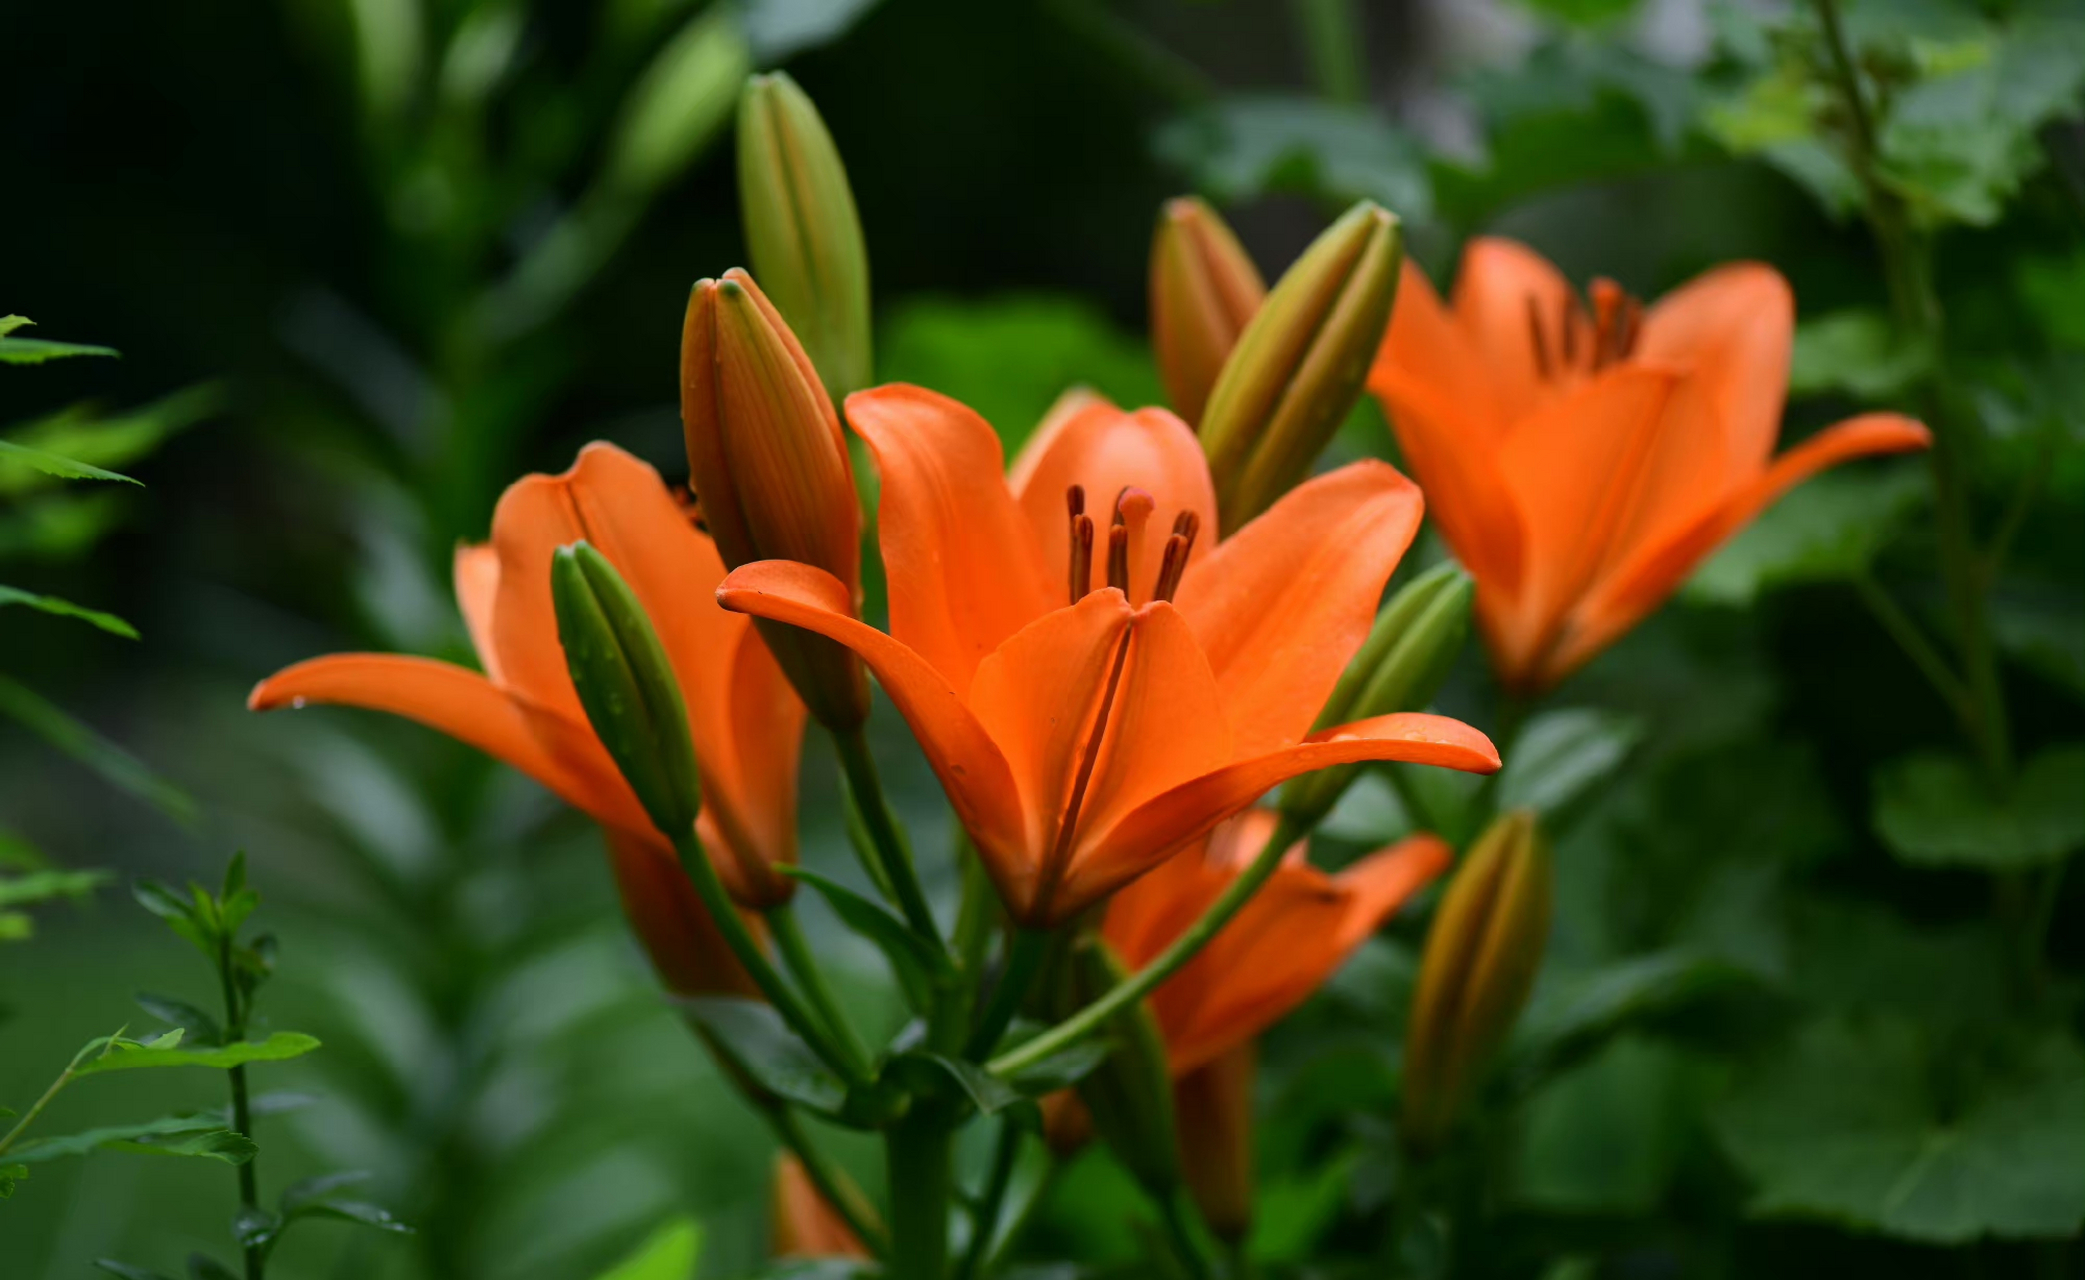 百合 sunderland, 纯粹的爱马仕橙色~  橙色,就是花园里珠宝一样的